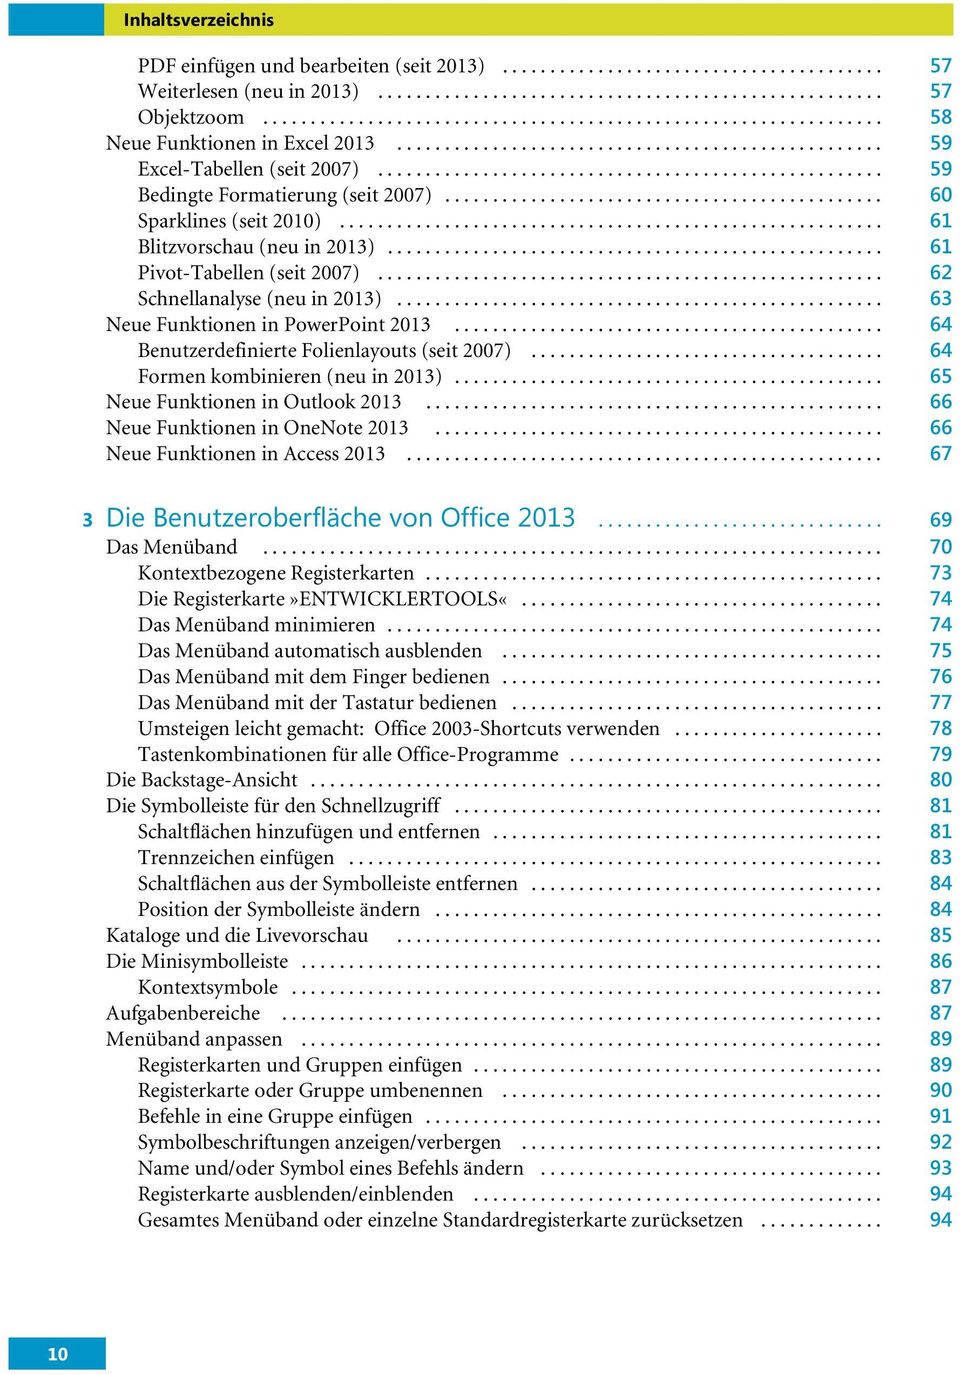 .. 64 Benutzerdefinierte Folienlayouts (seit 2007)... 64 Formen kombinieren (neu in 2013)... 65 Neue Funktionen in Outlook 2013... 66 Neue Funktionen in OneNote 2013.